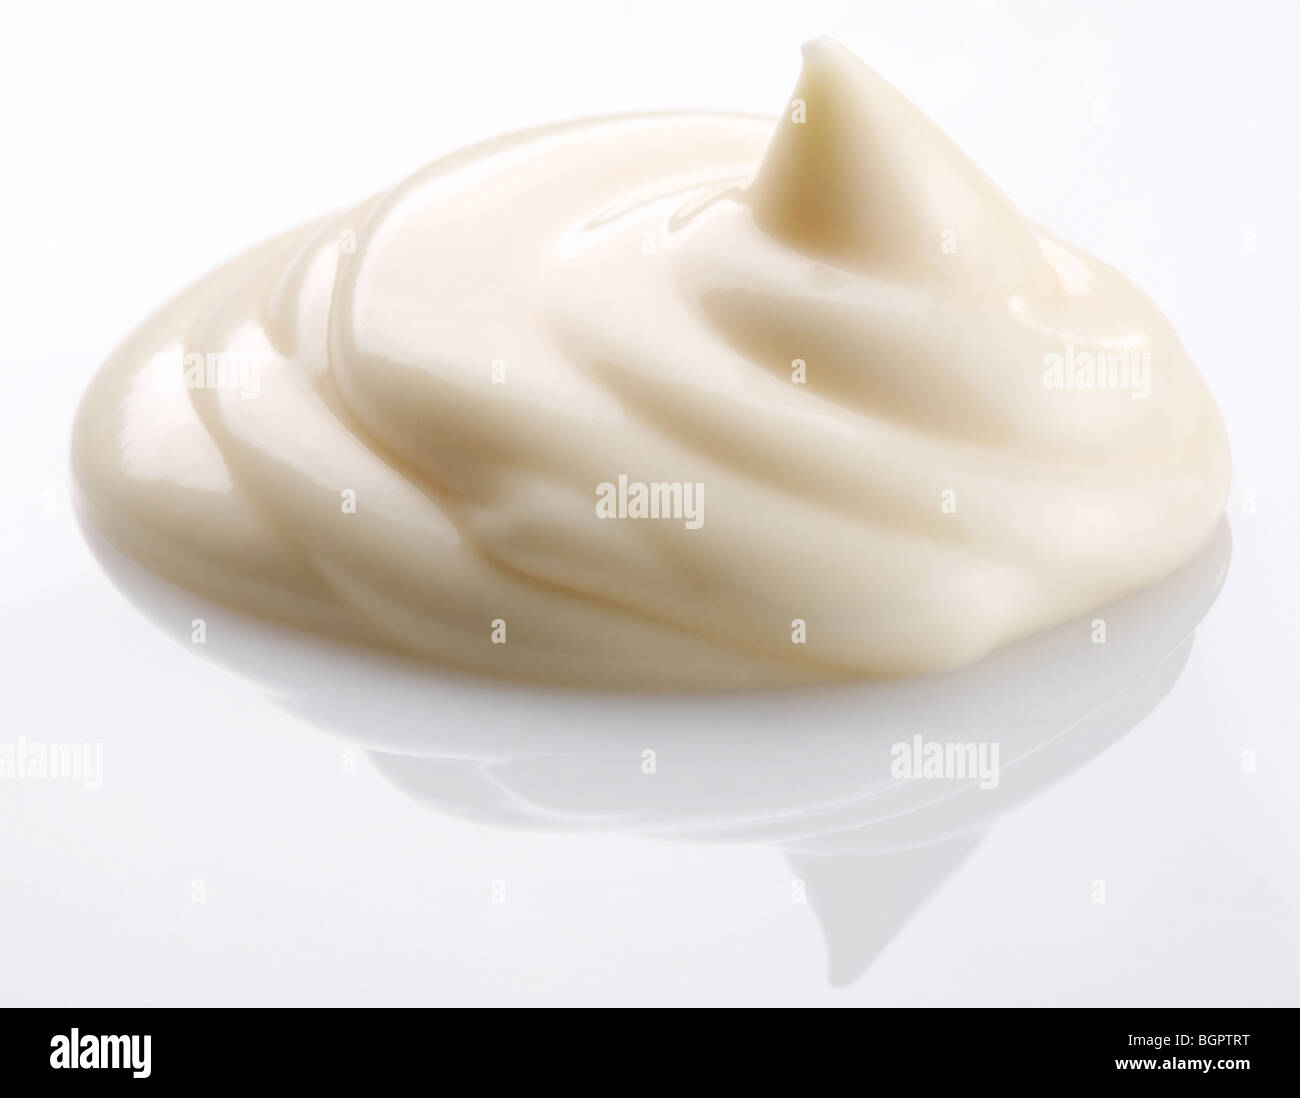 handful of mayonnaise on white background Stock Photo